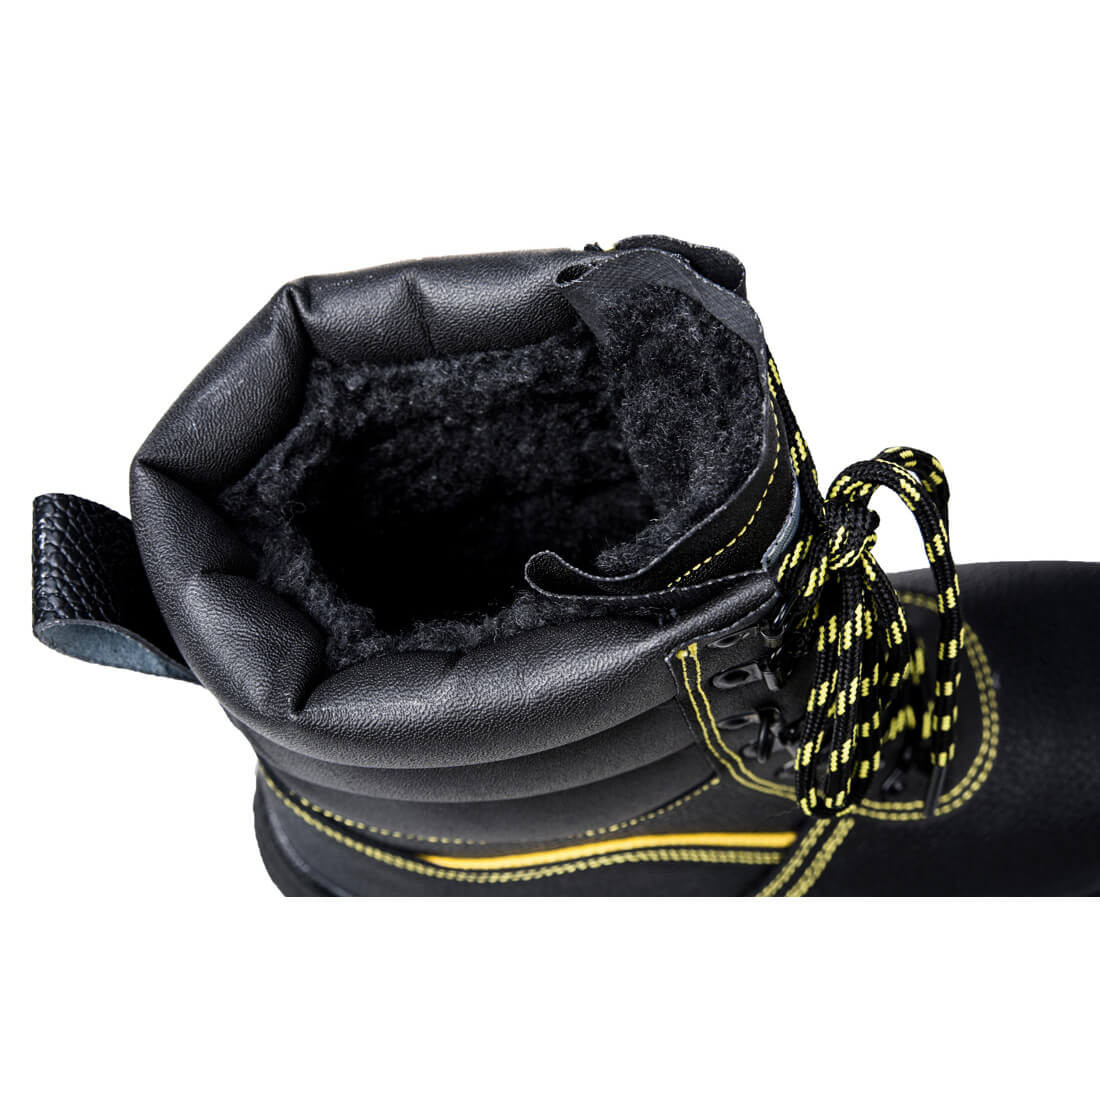 Brodequin Montant fourré S3 steelite - Les chaussures de protection